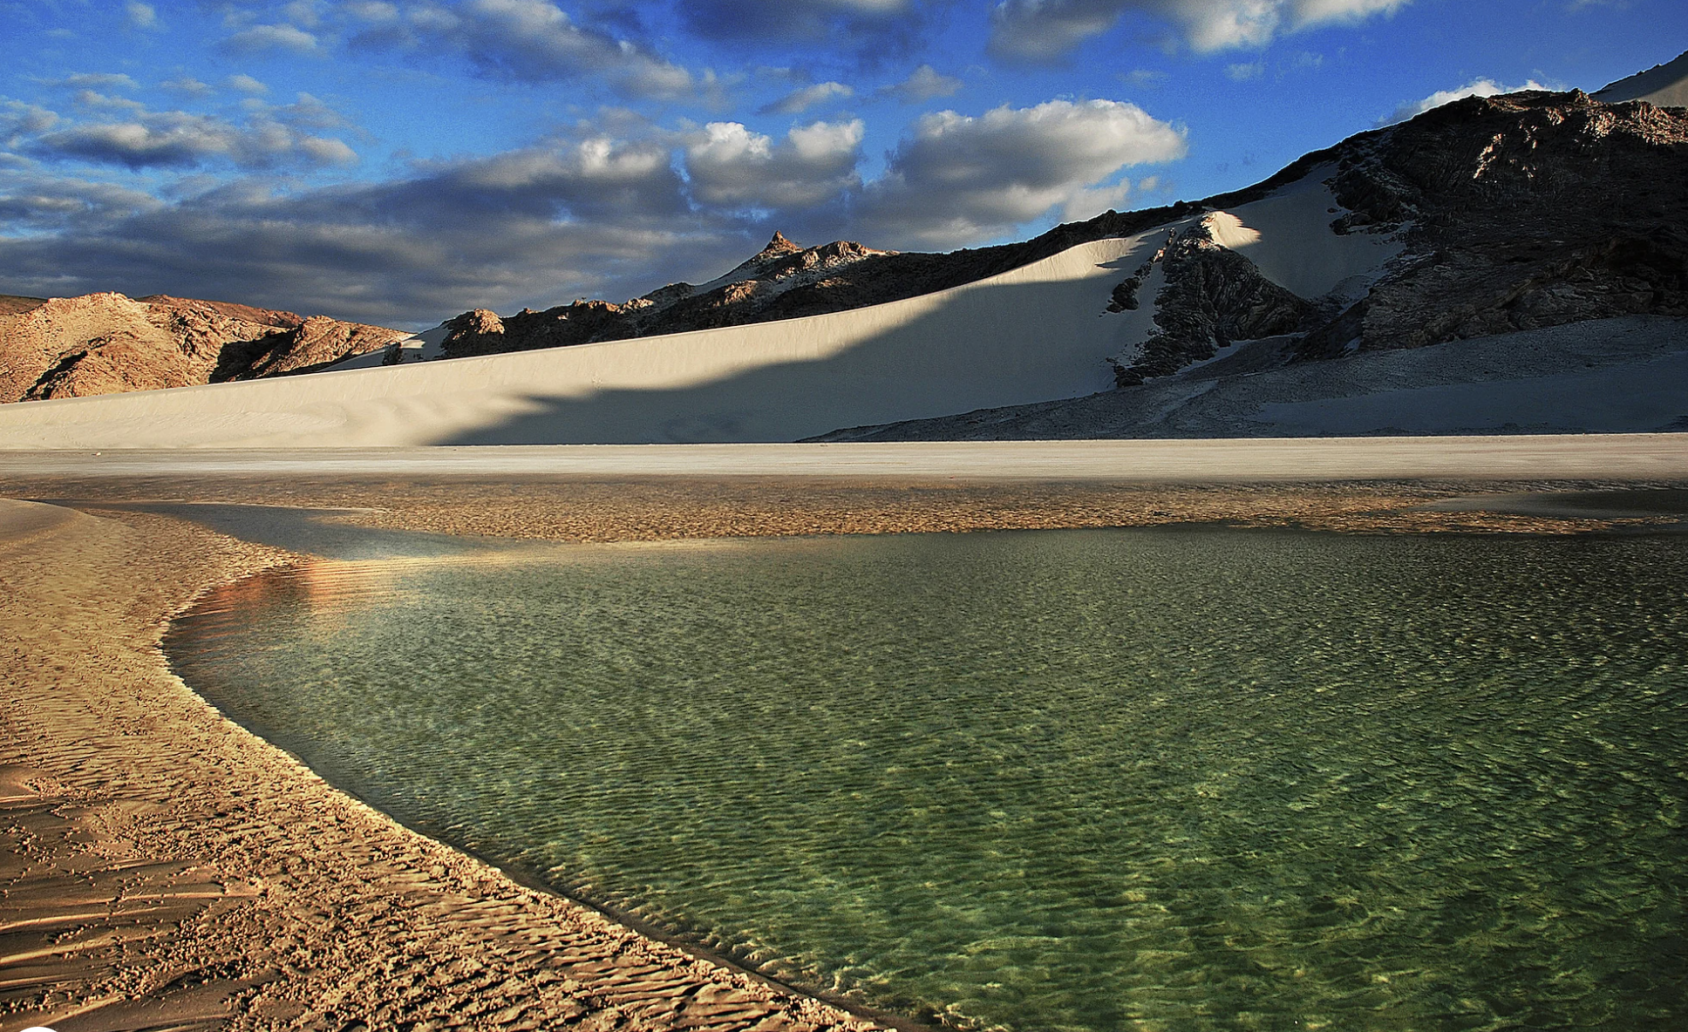 Una imagen de una masa de agua sobre la arena con montañas de fondo.